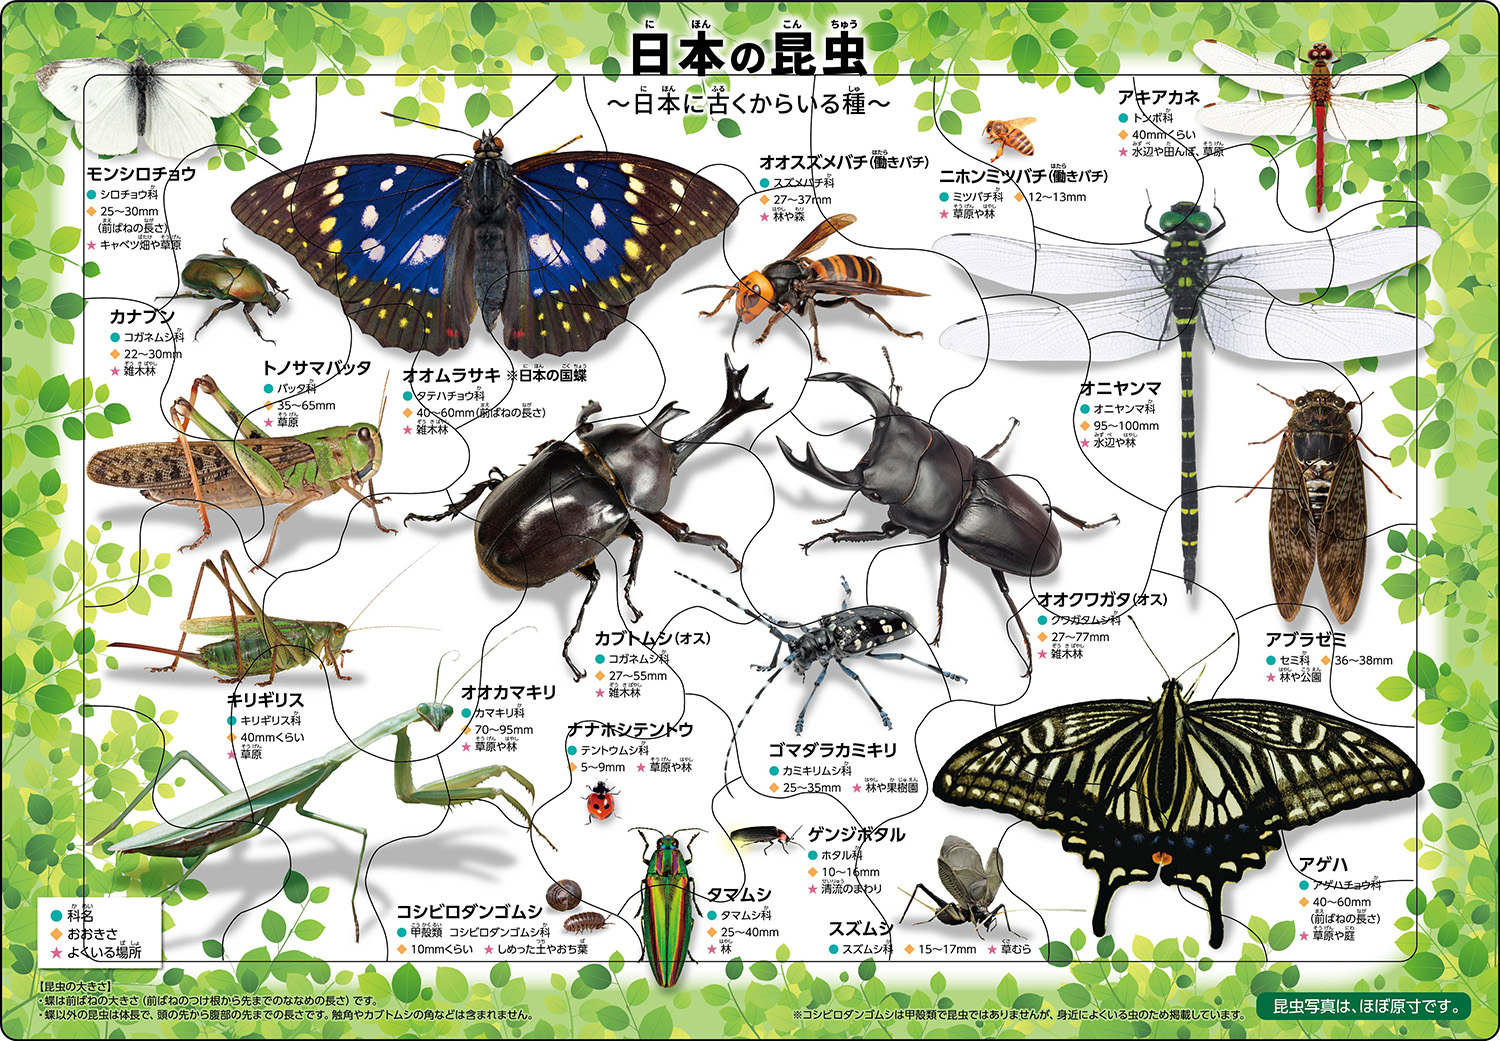 「日本の昆虫」ピクチュアパズル 日本の昆虫２０種類が学べるパズルで、昆虫の写真はほぼ原寸大。カブトムシやオオクワガタをはじめ、子どもに人気があり小学校の教科書に掲載されている日本の昆虫をラインナップ。